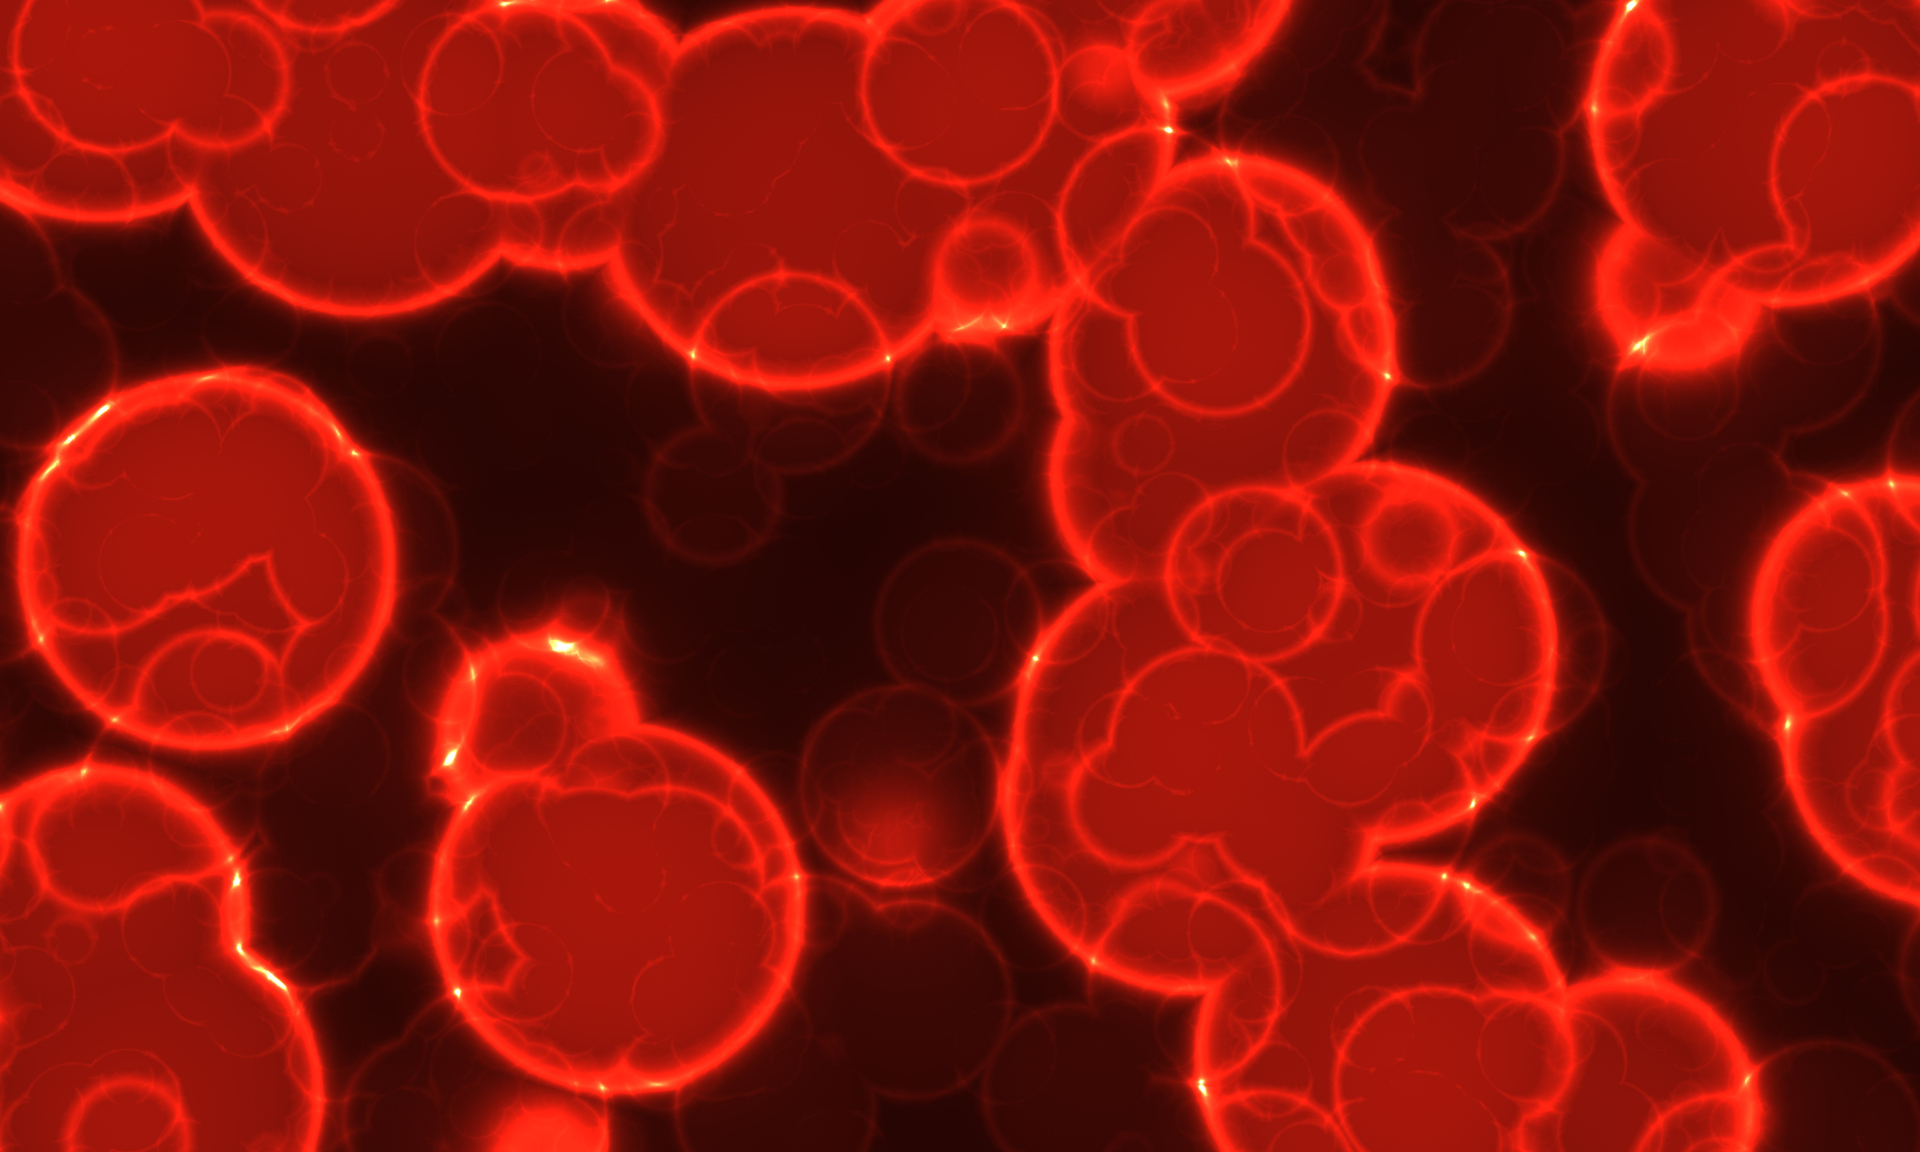 Na tym obrazku w przybliżeniu widzimy leukocyty, które są małymi, okrągłymi komórkami obecnymi we krwi. Ich różnorodne kolory i kształty odzwierciedlają różne typy leukocytów, takie jak granulocyty i agranulocyty. Ten obrazek w przybliżeniu przedstawia fascynujący mikrokosmos białych krwinek, które odgrywają kluczową rolę w obronie organizmu przed infekcjami i utrzymaniu zdrowia układu odpornościowego